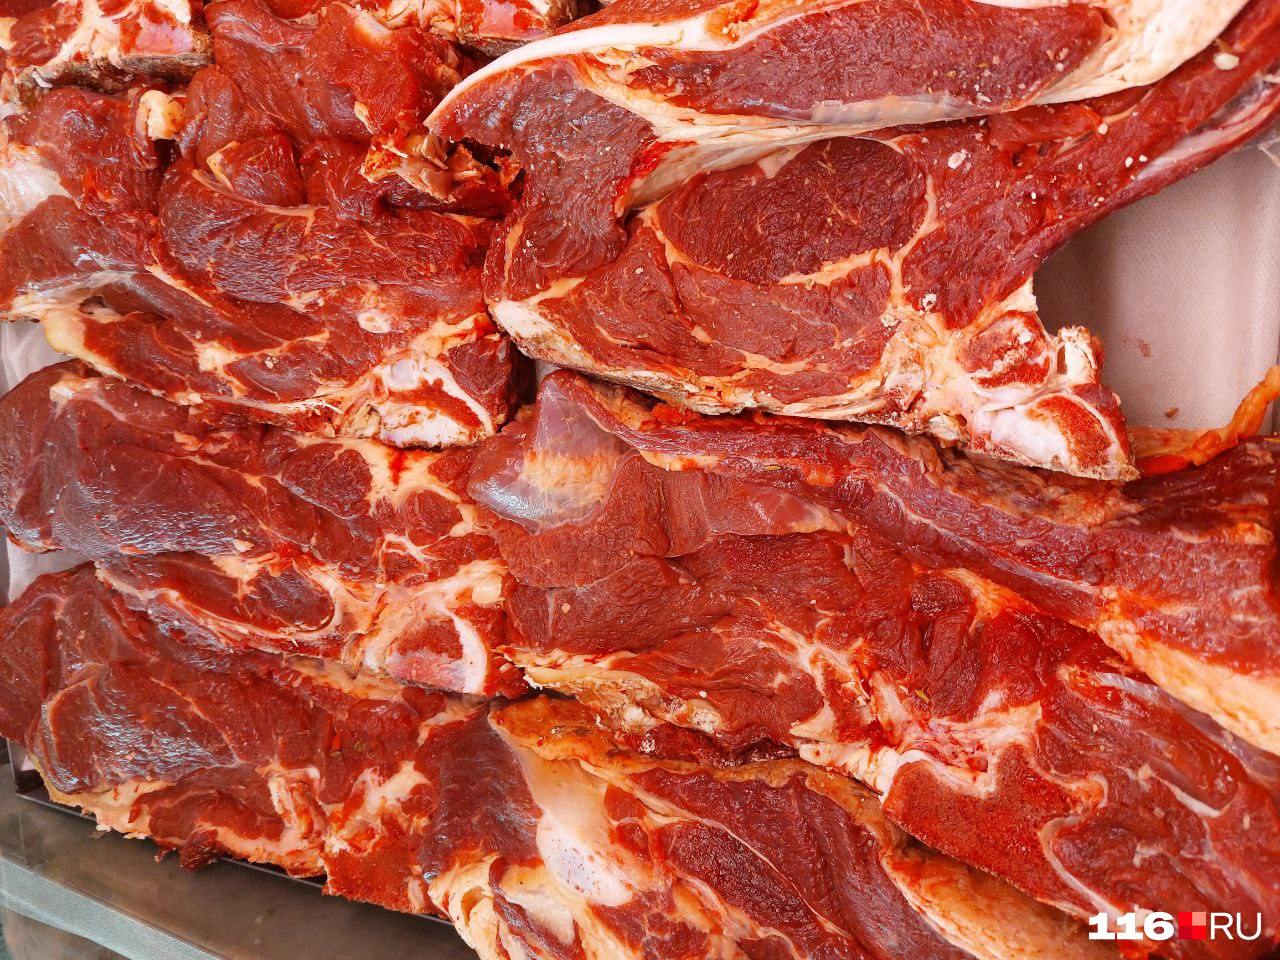 Мясо, которое продают на Московском рынке, выглядит свежим. Стоимость килограмма — 450 рублей